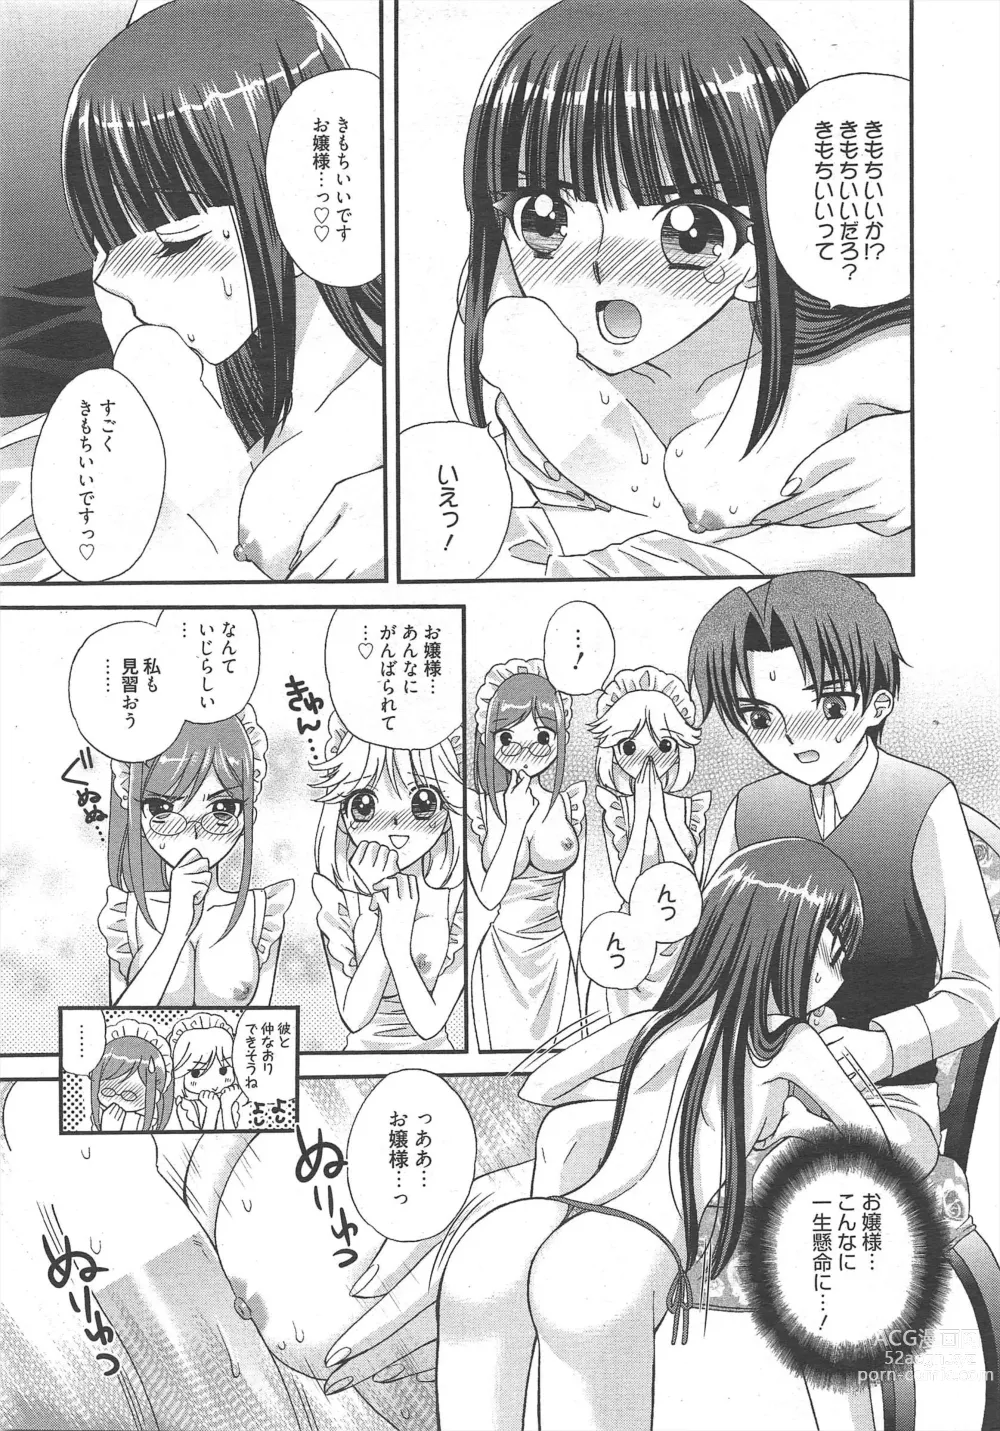 Page 17 of manga Manga Bangaichi 2012-06